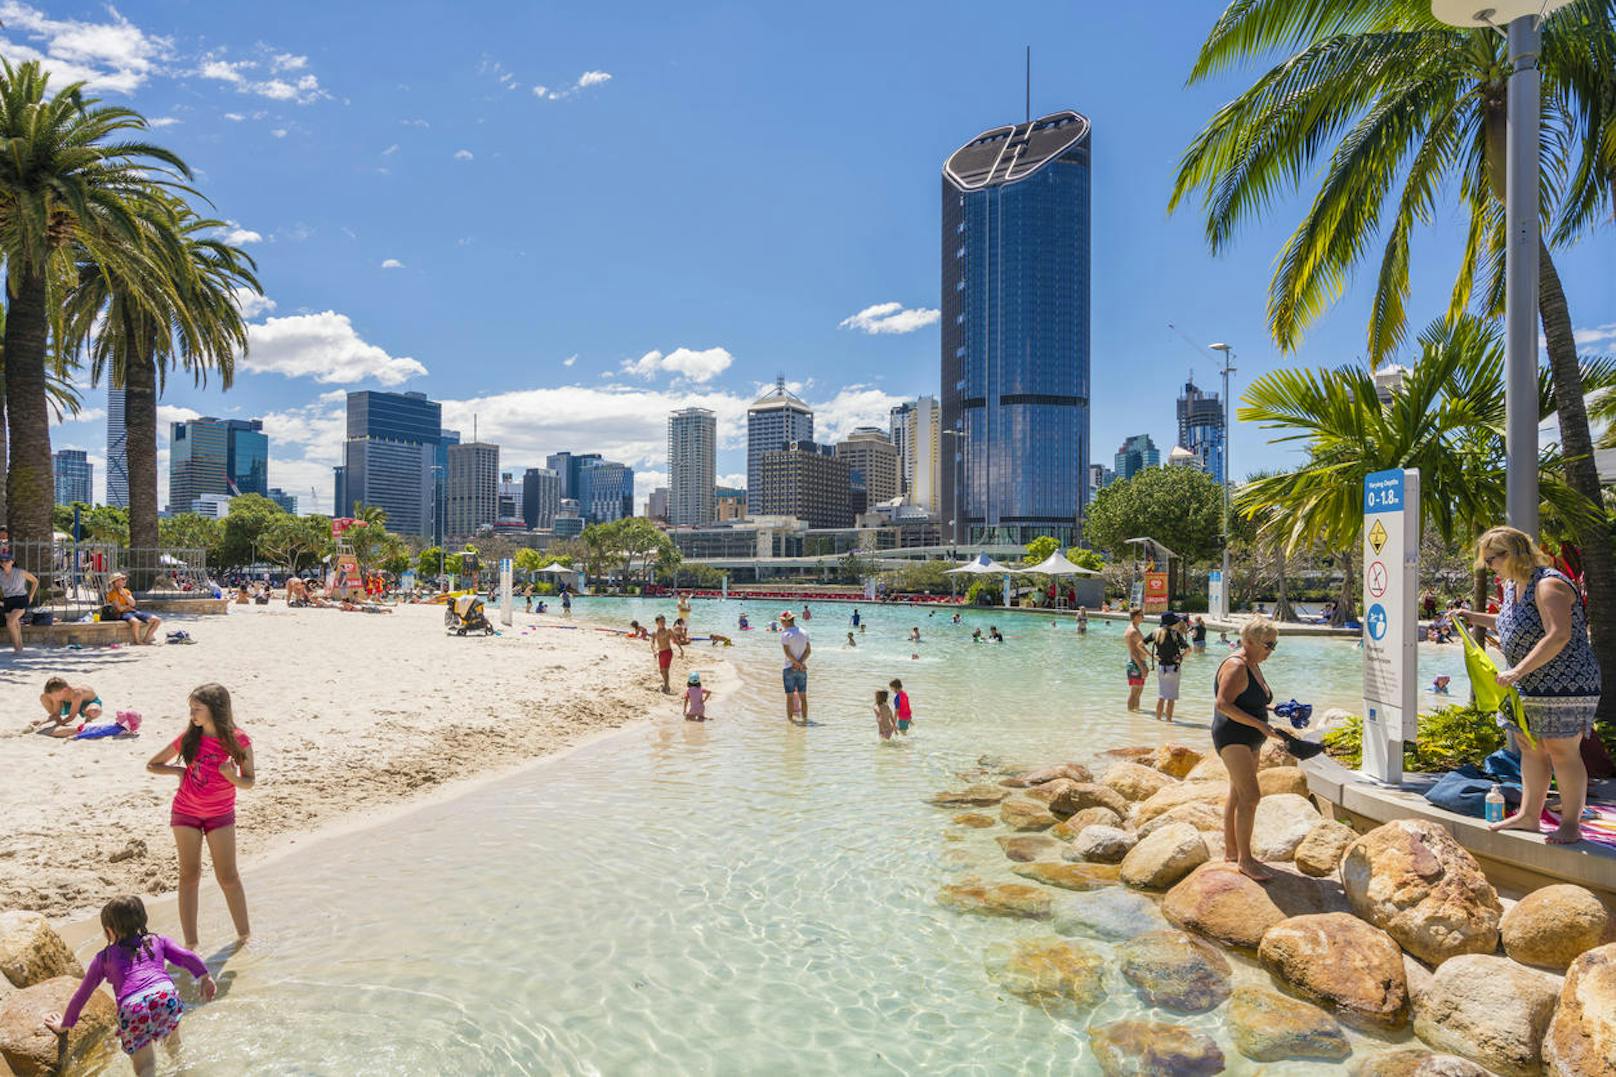 <b>Brisbane, Australien:</b>
Wer die Weihnachtsfeiertage im Warmem verbringen möchte, sollte unbedingt eine Reise nach Australien machen.Nicht nur, dass ihr hier auf einen warmen Wintermantel sowie Haube und Schal verzichten könnt, hier könnt ihr auch einen festlichen Sandmann am Strand bauen.

Doch nicht nur am Strand ist Weihnachten in Australien ein außergewöhnliches Erlebnis. Auch in den Städten grüßt Santa Clause an 1000 Ecken. Durch Brisbane schlendernd, findet ihr so einige denkwürdige Bilder für euer Familien-Album.